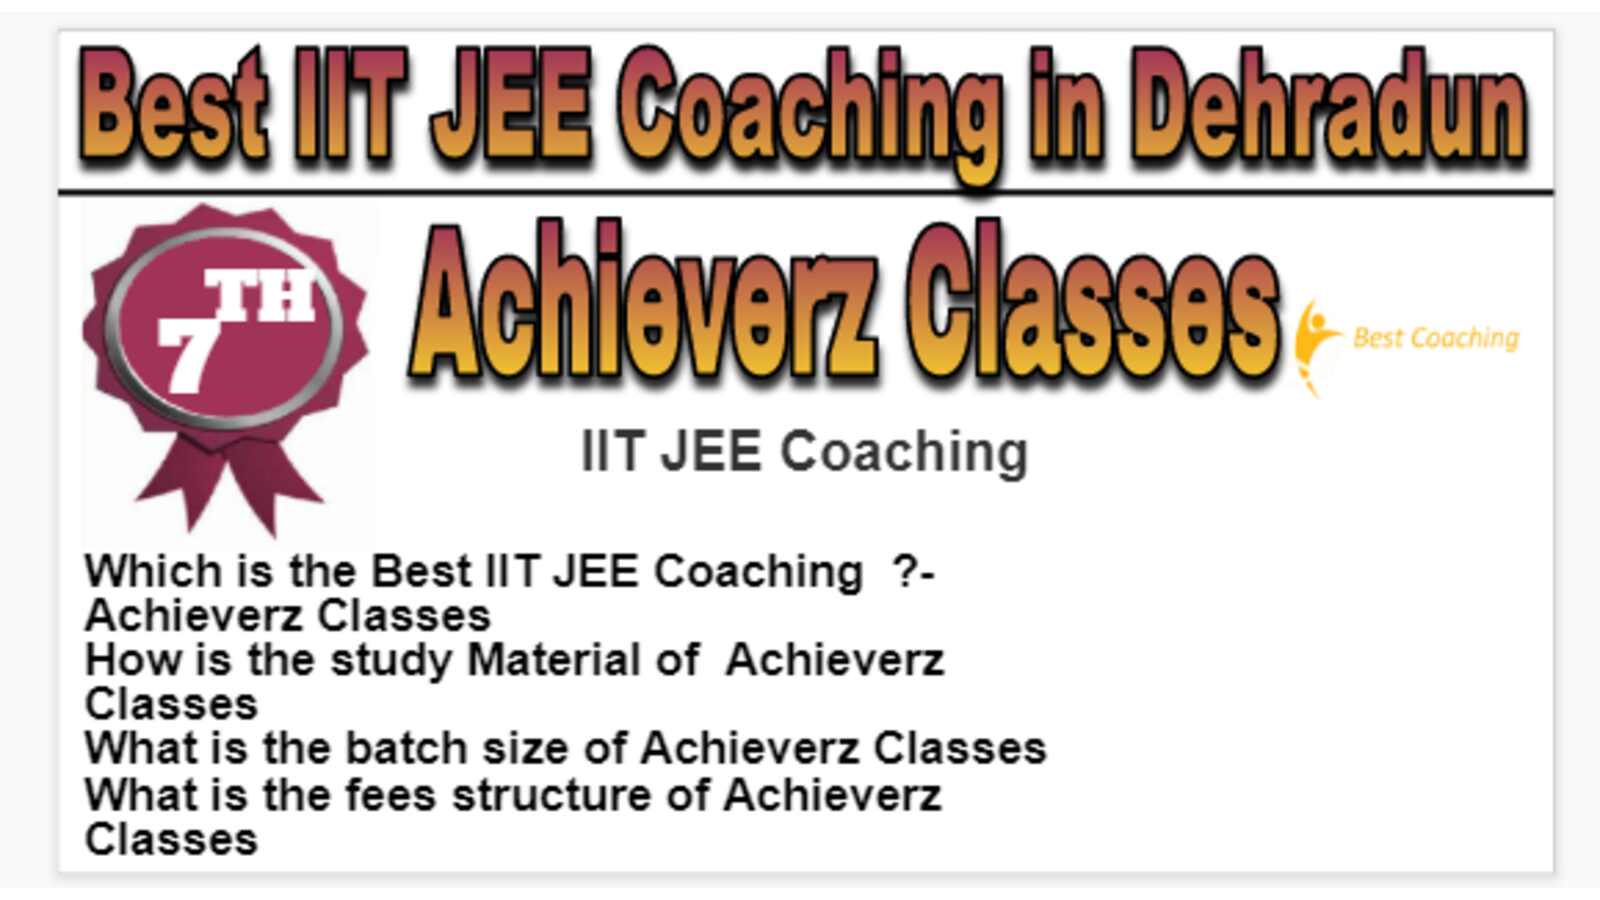 Rank 7 Best IIT JEE Coaching in Dehradun